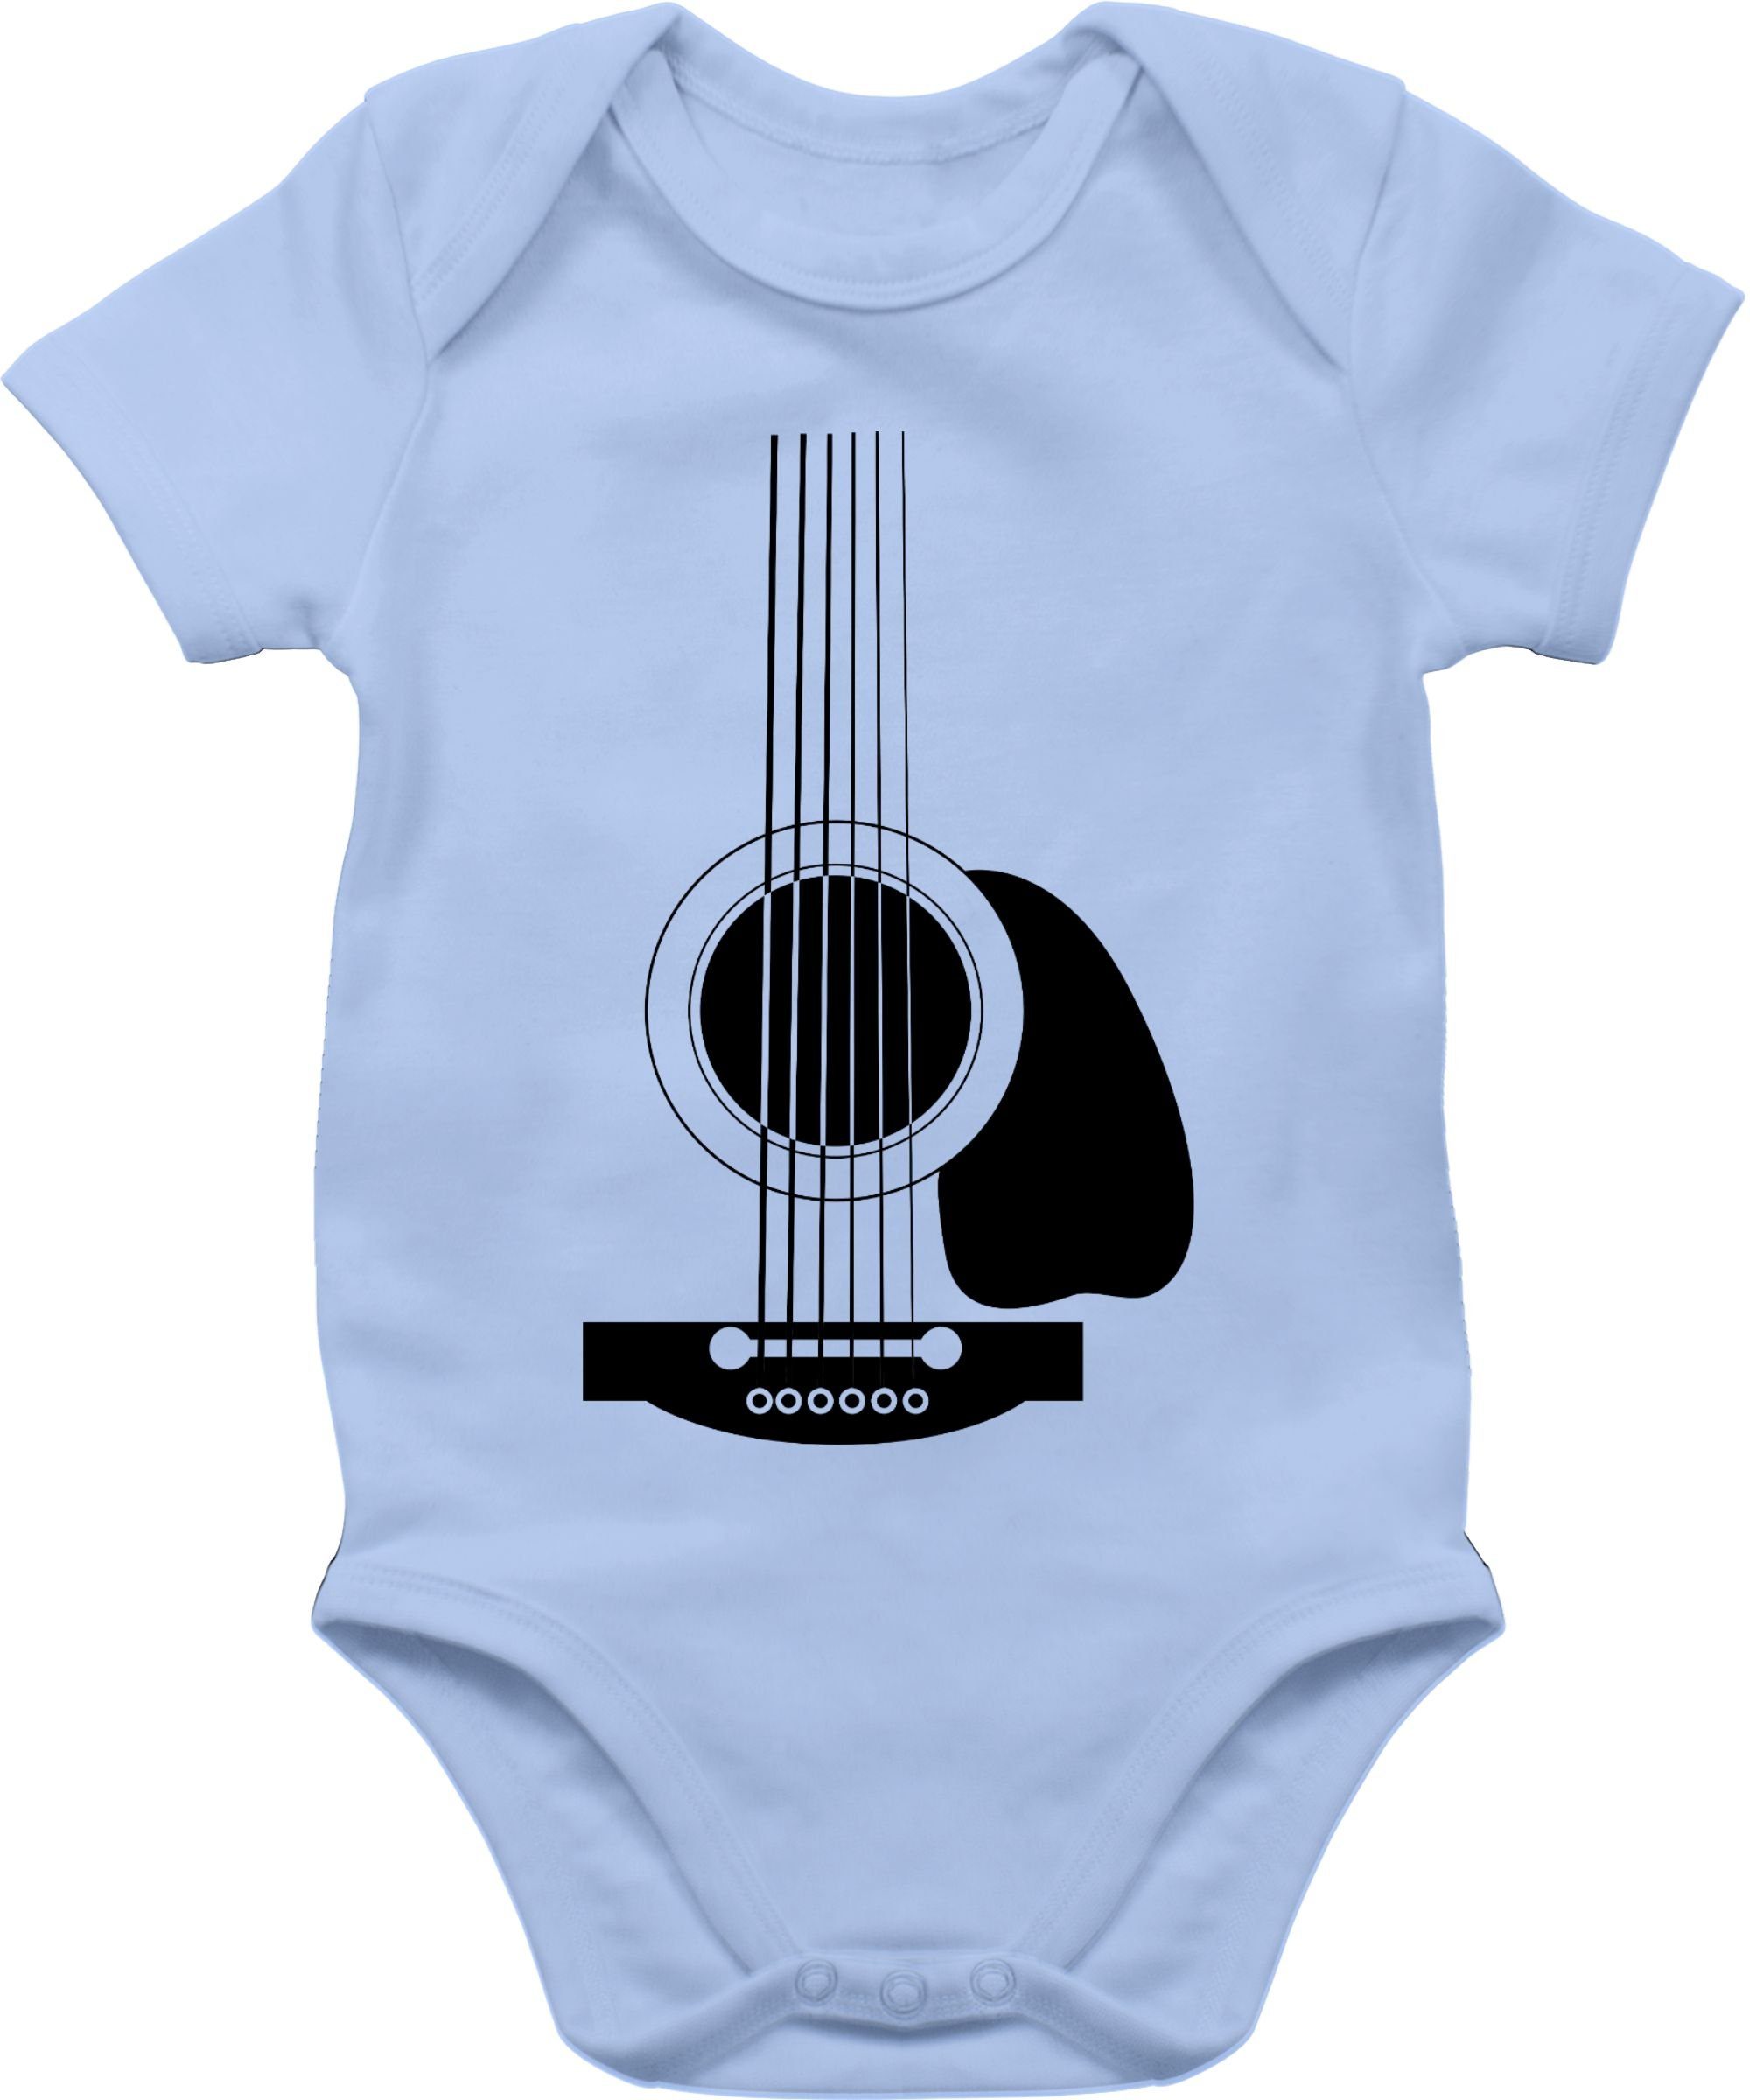 Shirtracer Shirtbody Gitarren Body Strampler Baby Mädchen & Junge 2 Babyblau